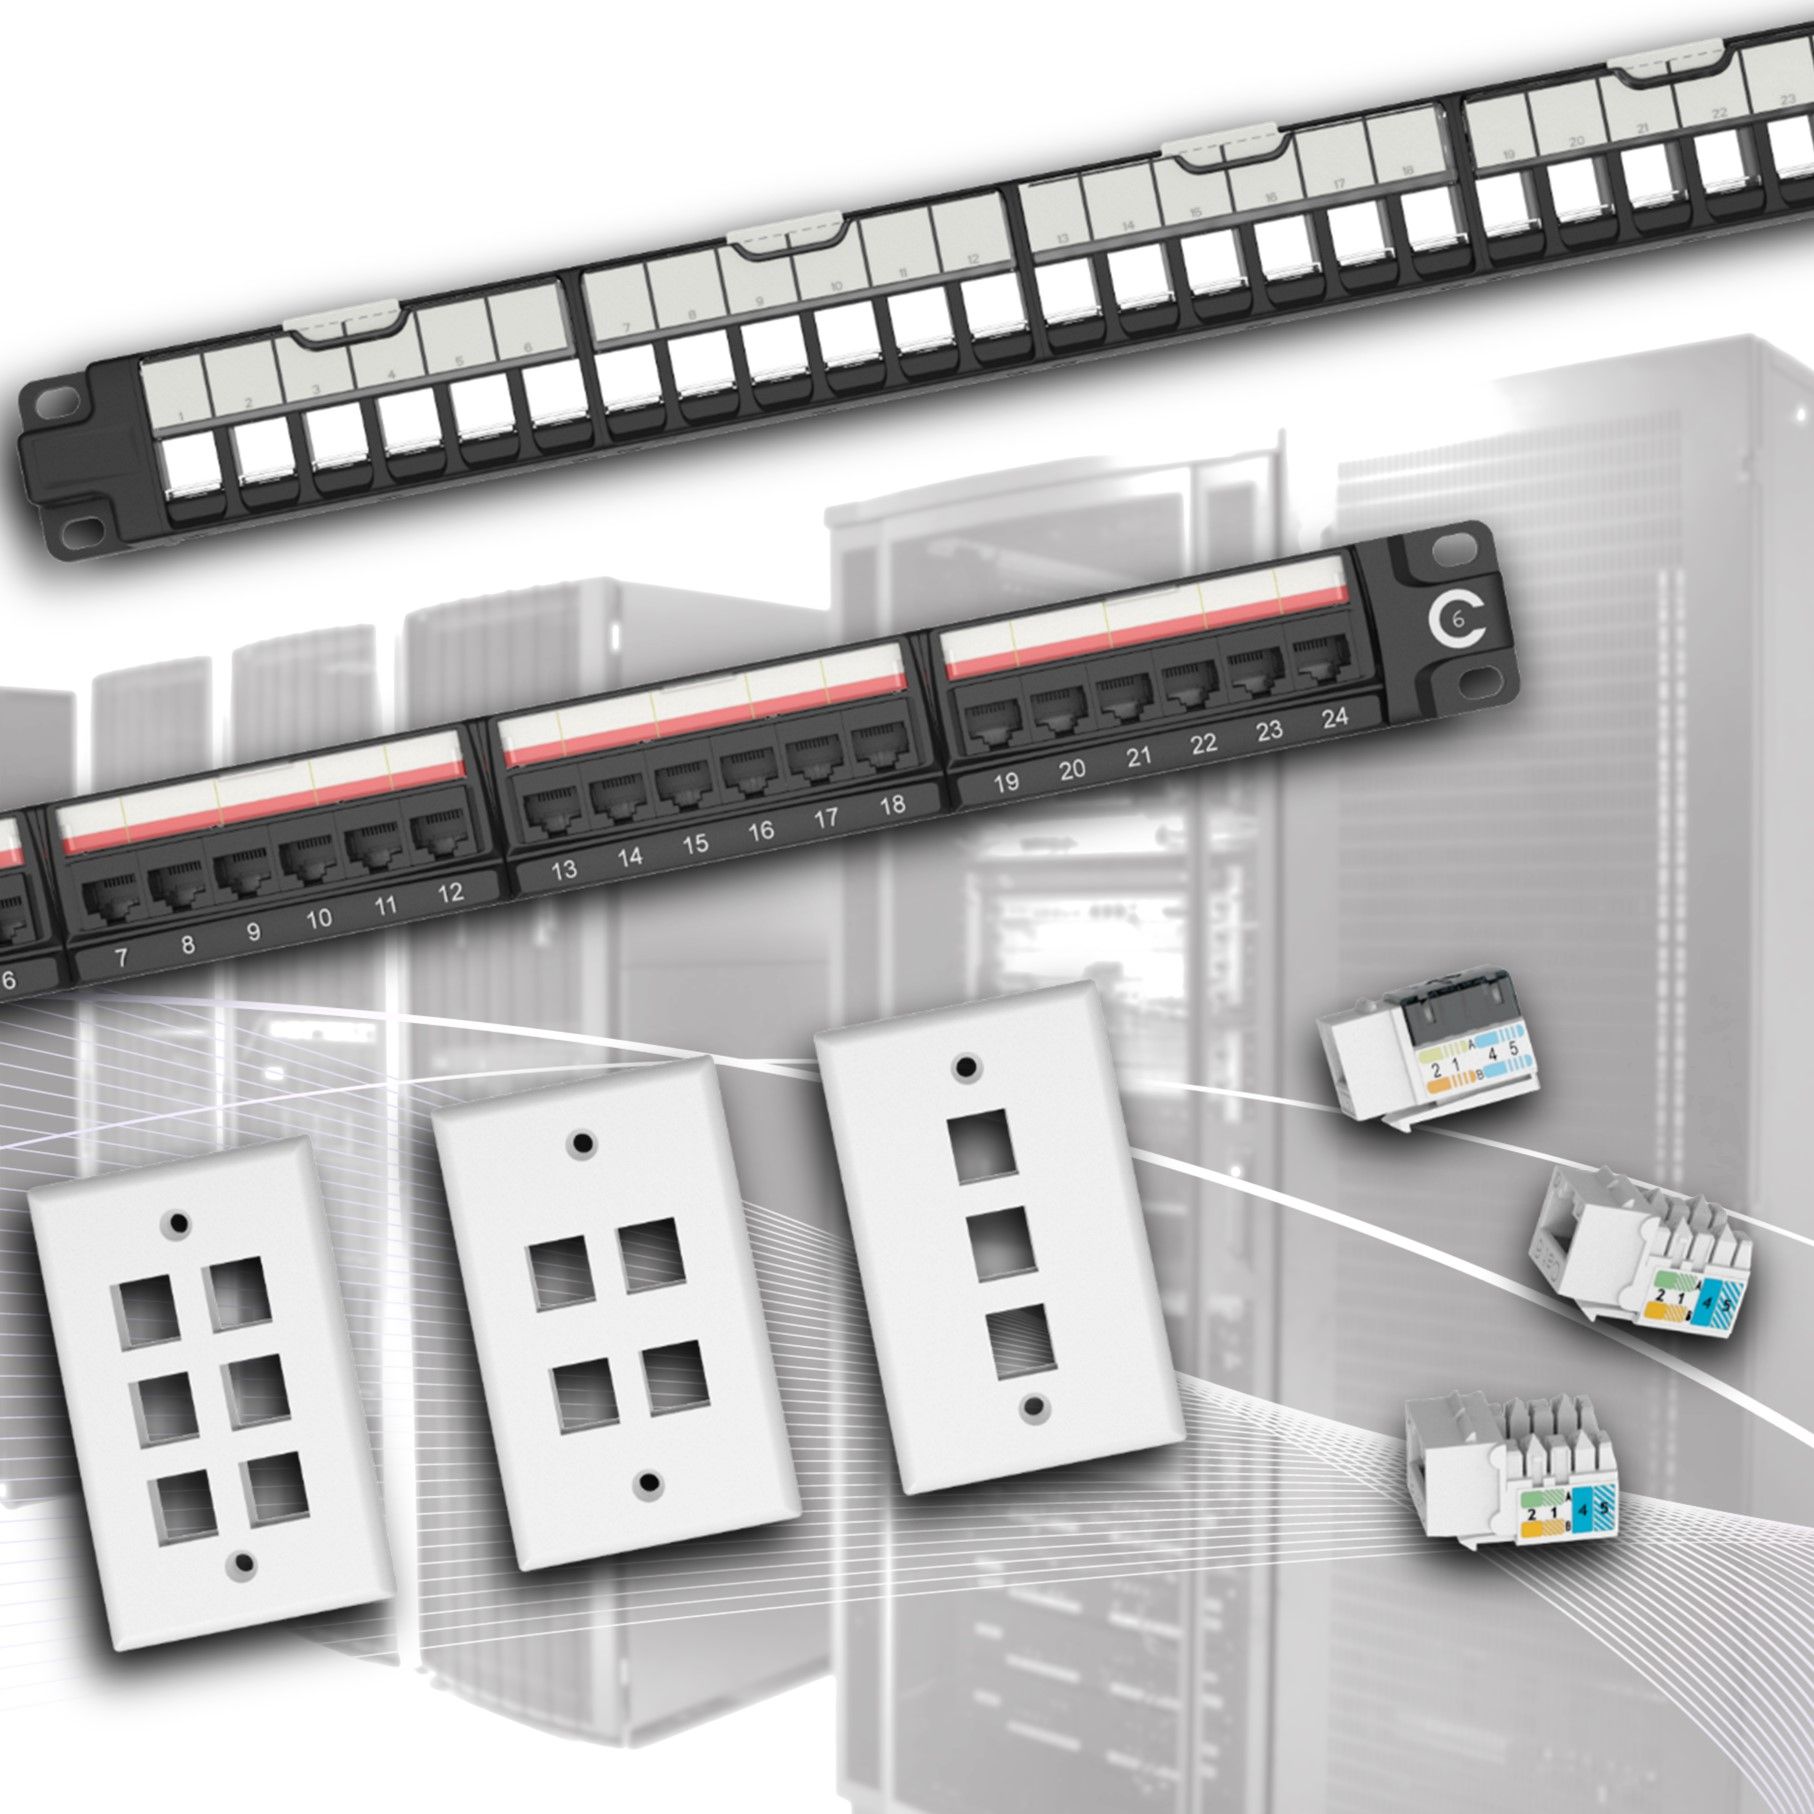 Gniazdo keystone i panel patchowy mogą być używane w budynkach komercyjnych do przesyłu danych